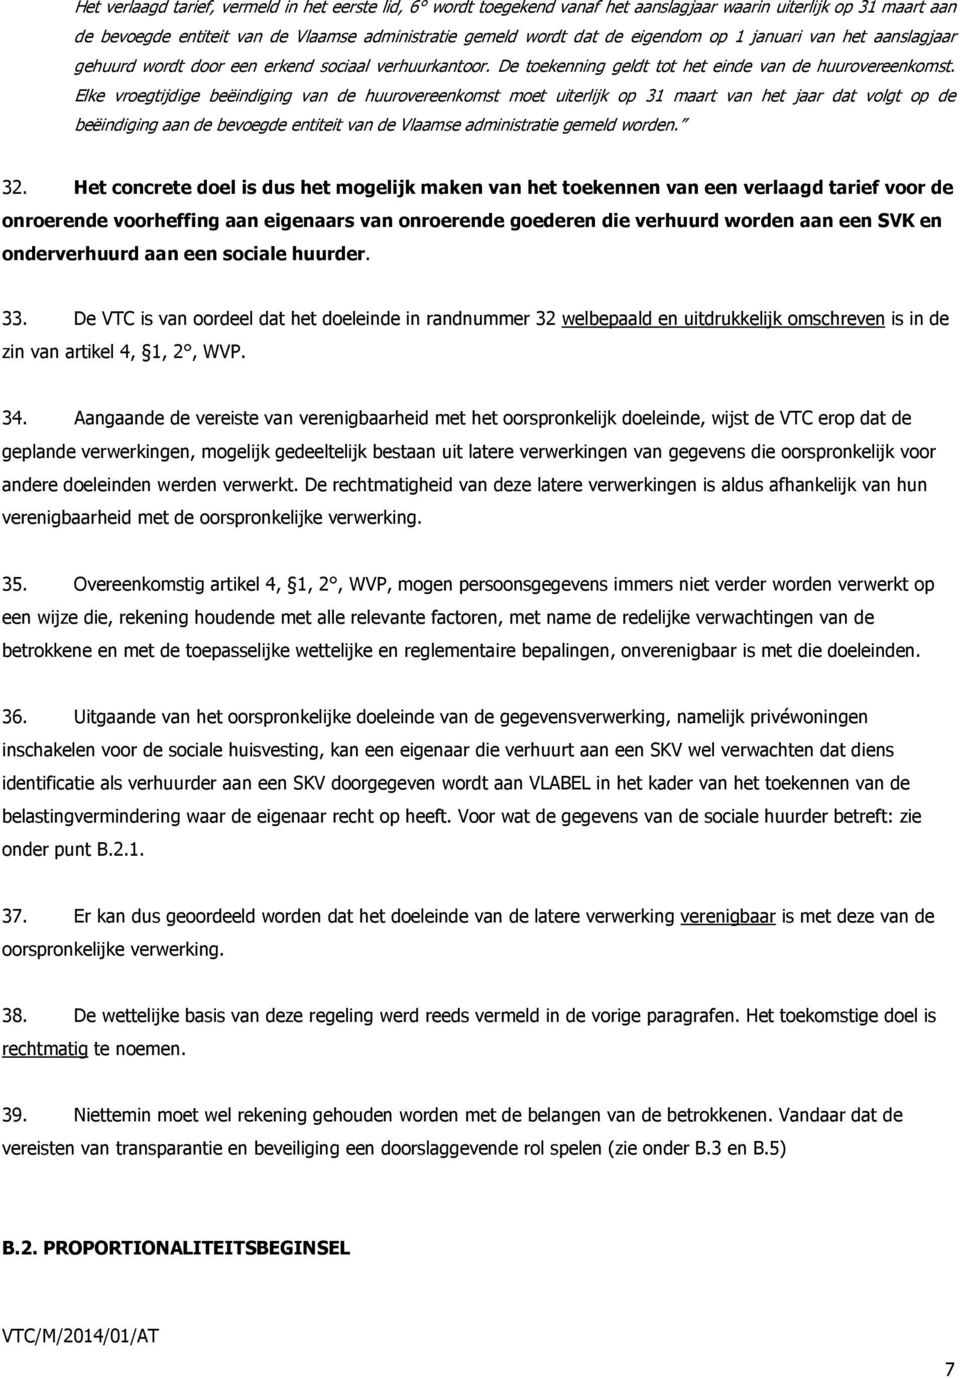 Elke vroegtijdige beëindiging van de huurovereenkomst moet uiterlijk op 31 maart van het jaar dat volgt op de beëindiging aan de bevoegde entiteit van de Vlaamse administratie gemeld worden. 32.